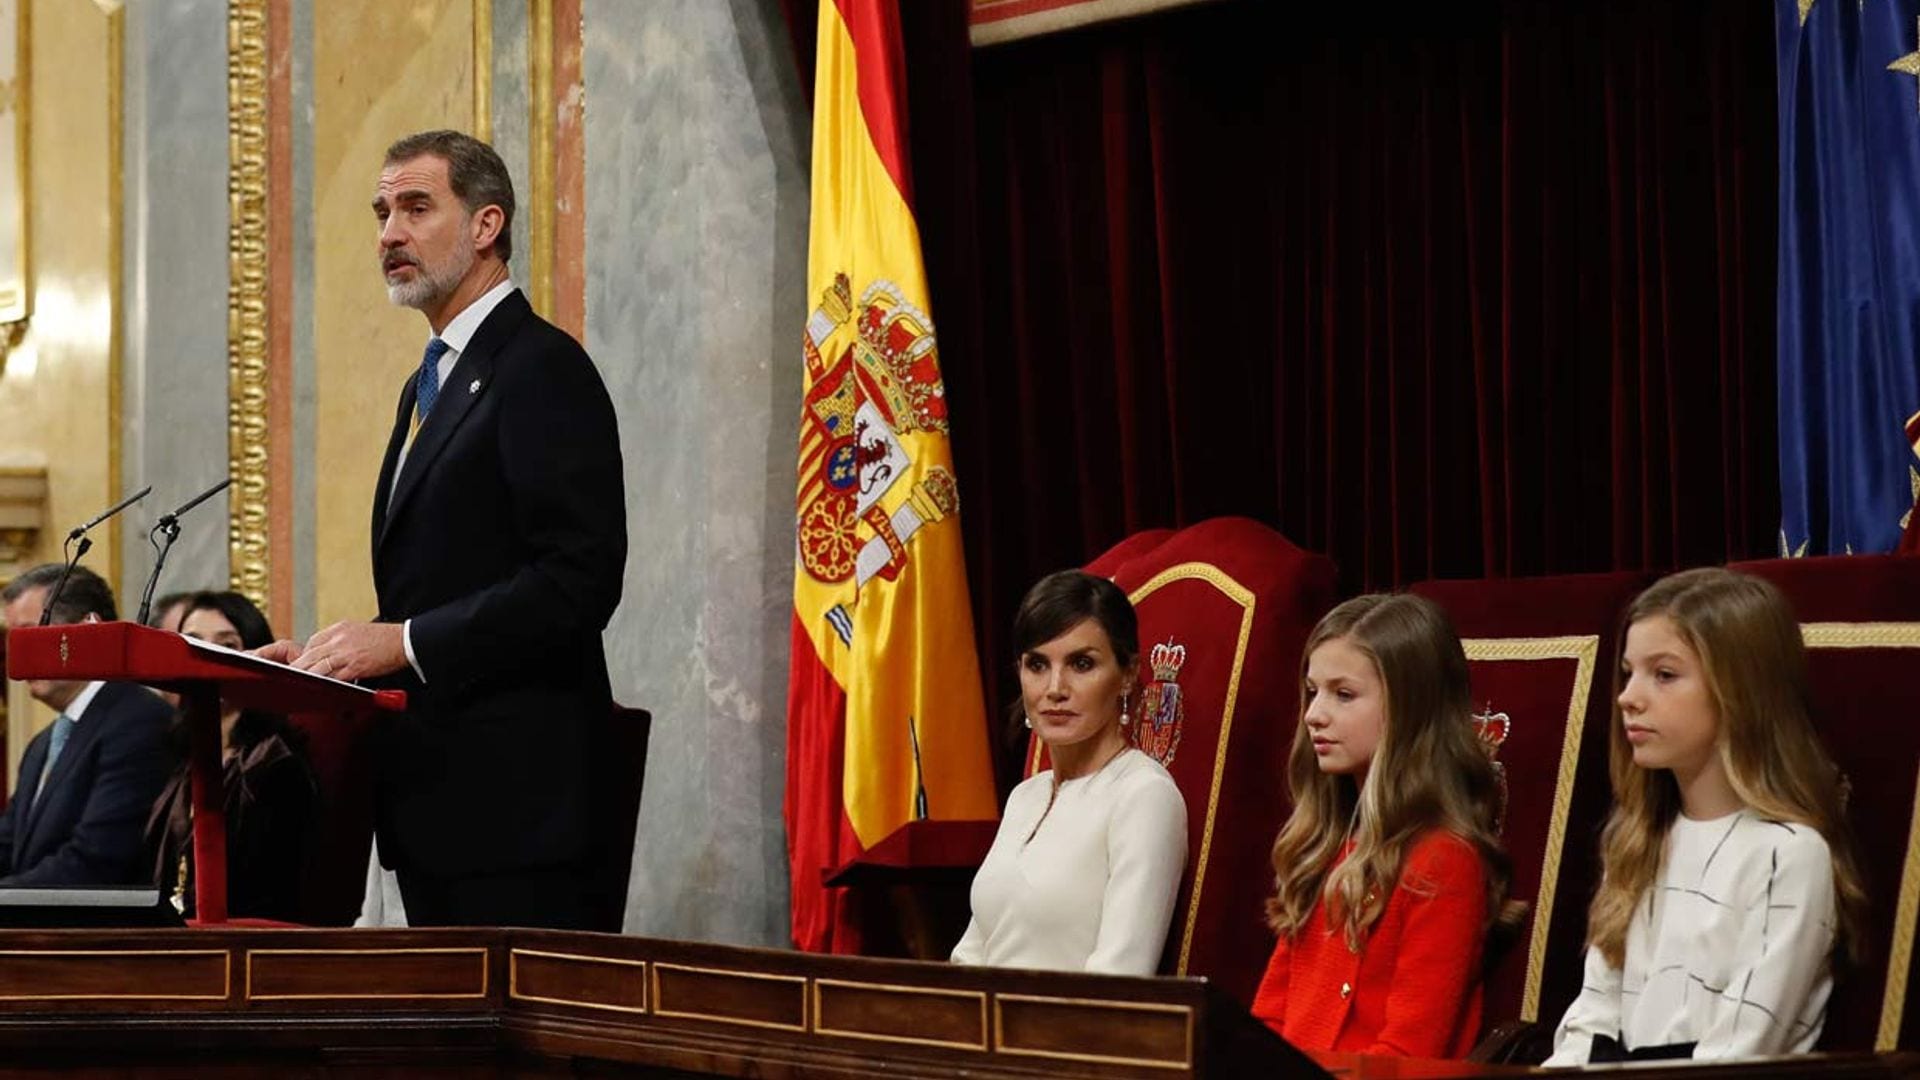 Los Reyes, en compañía de sus hijas, presiden la solemne apertura de Las Cortes